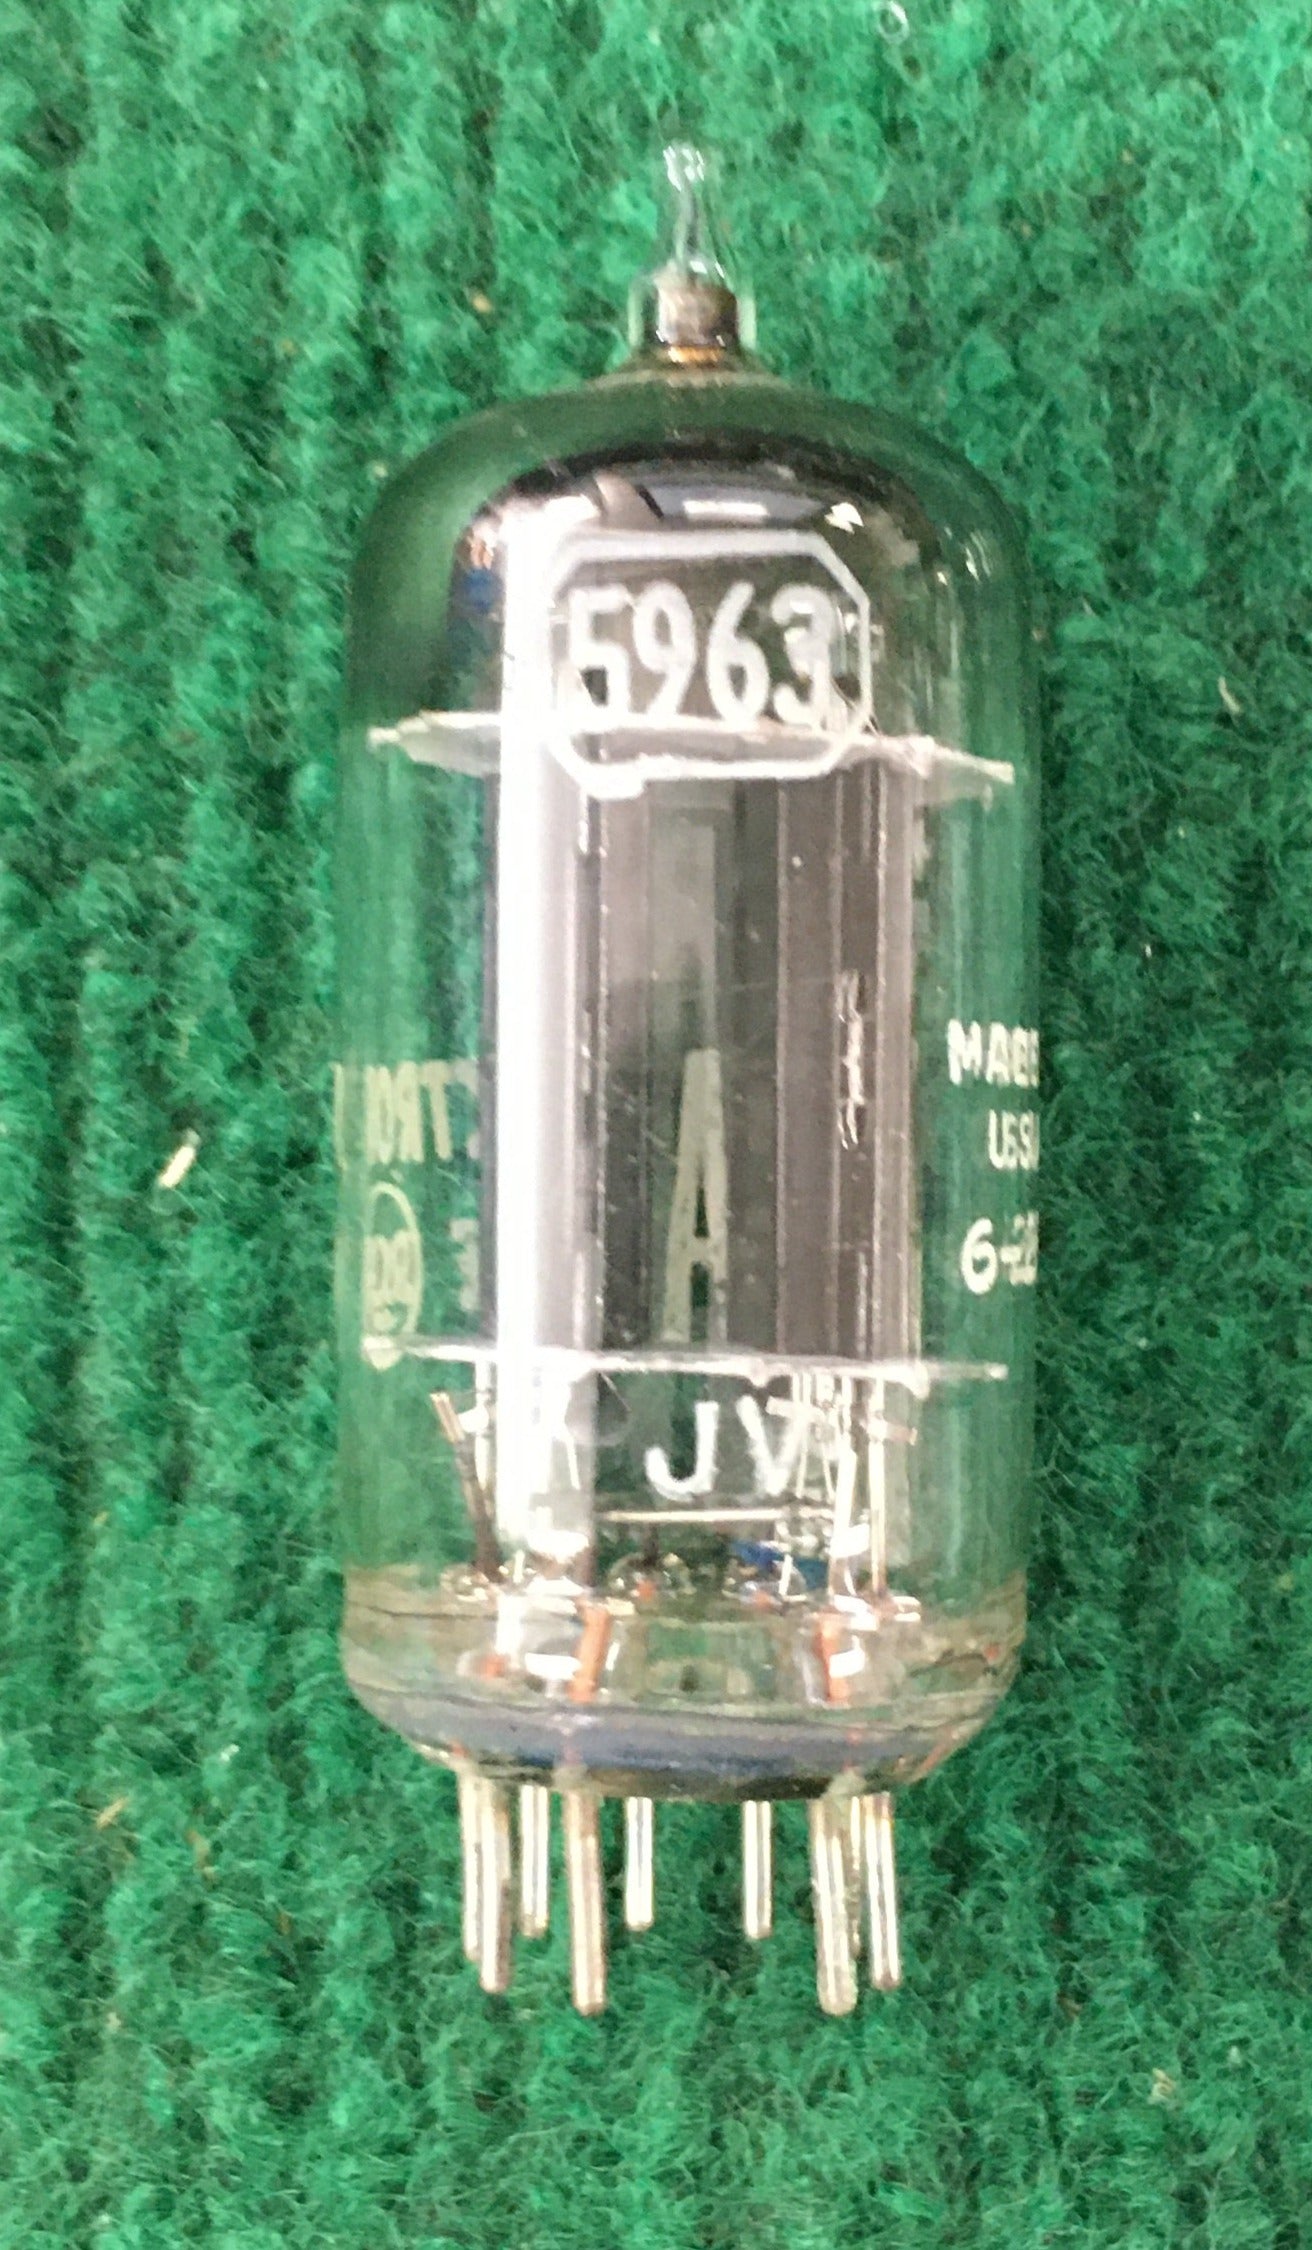 RCA * 5963 Tube * Tested 115/119